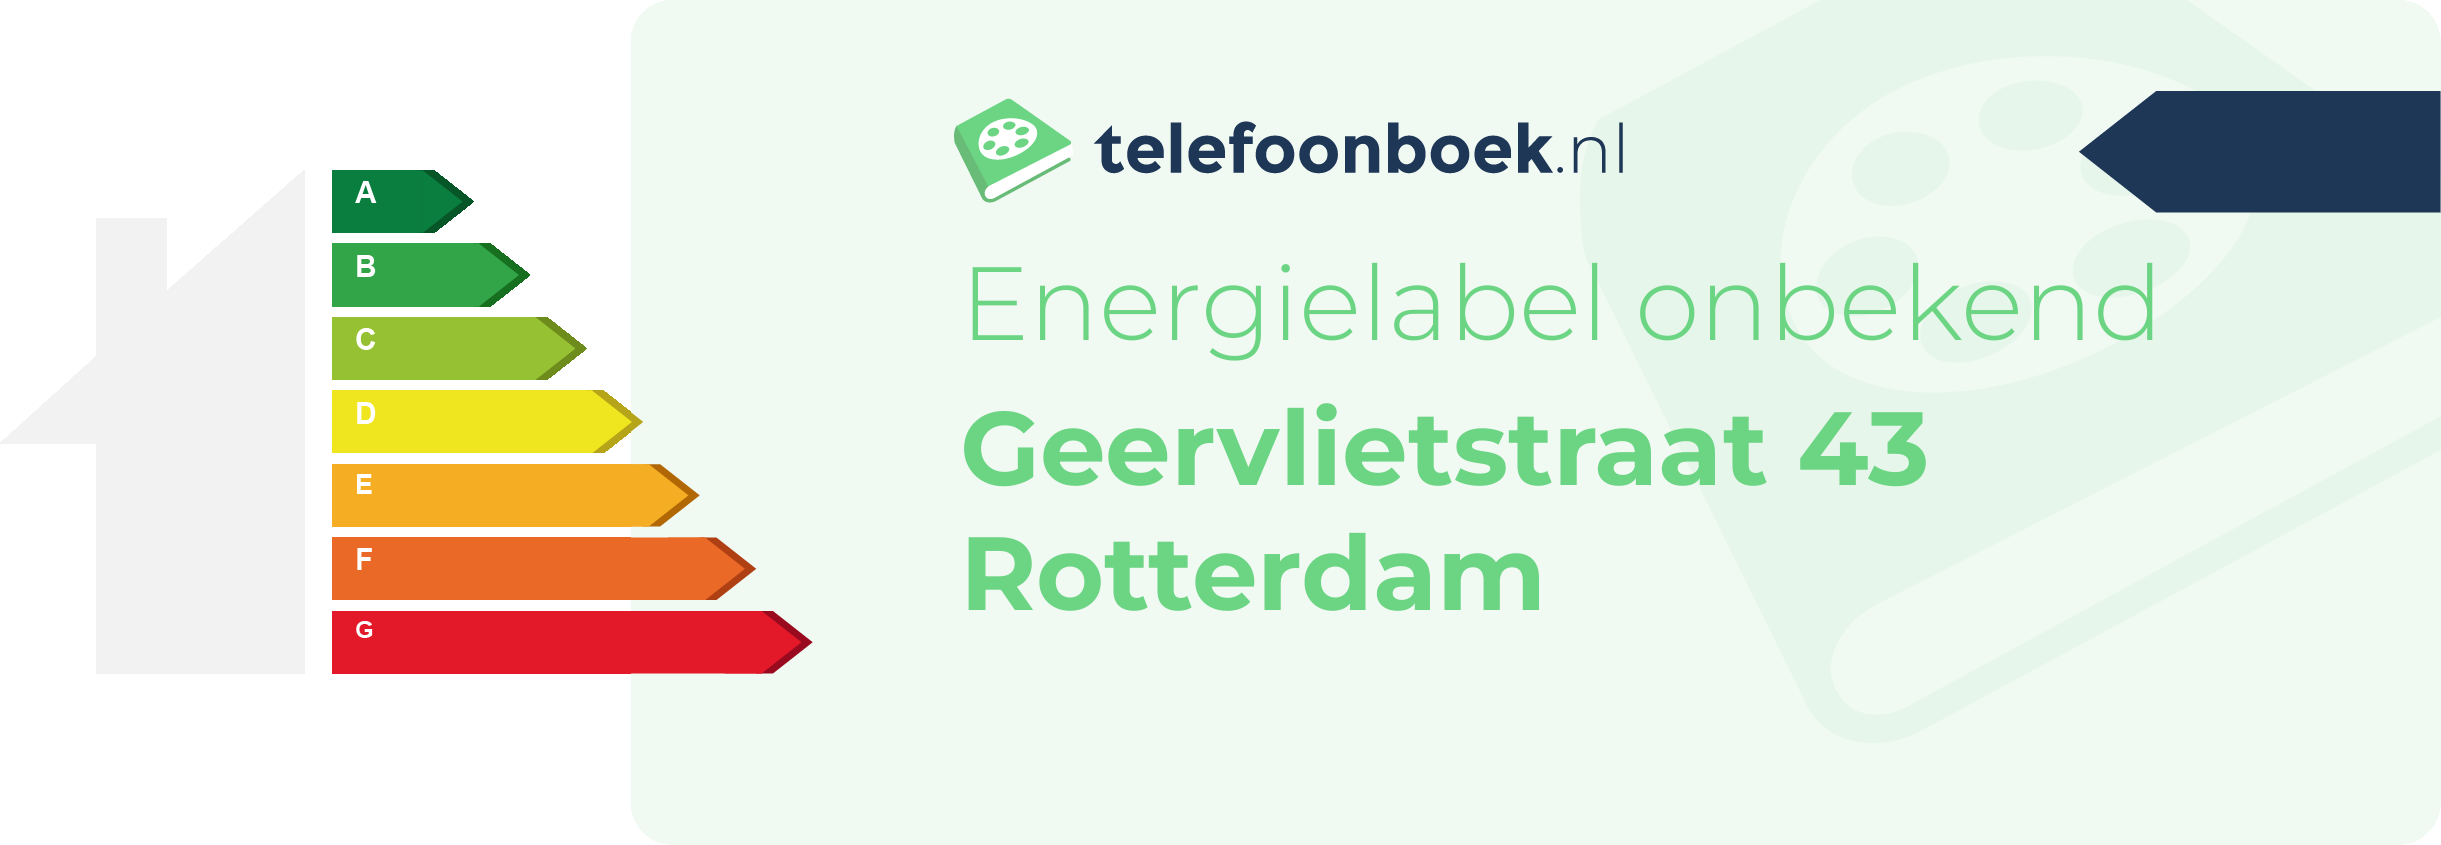 Energielabel Geervlietstraat 43 Rotterdam